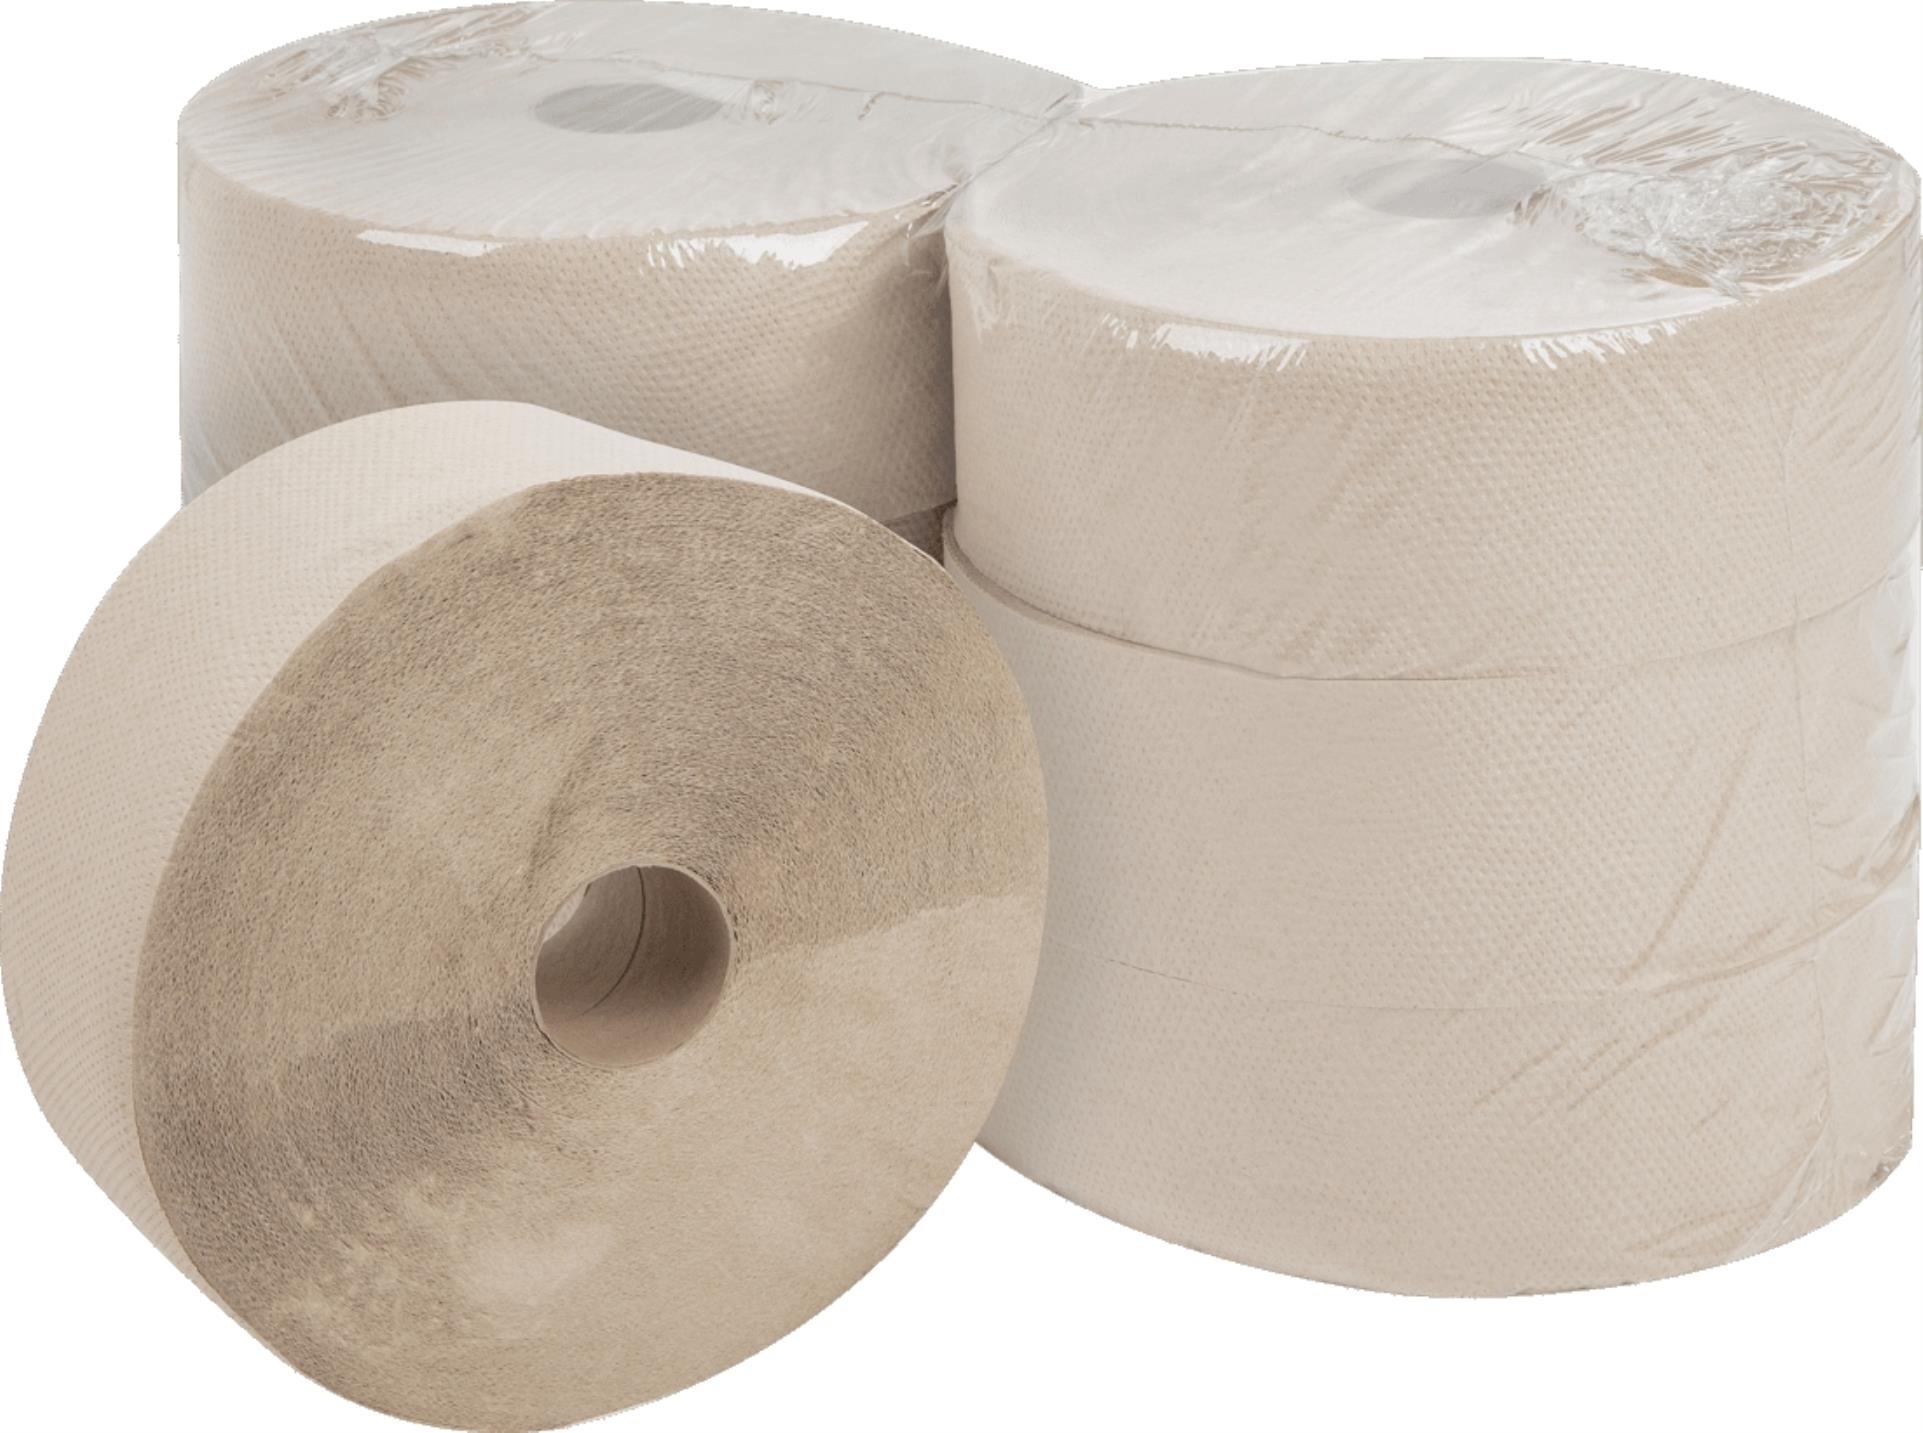 Toaletní papír Jumbo - jednovrstvý, průměr 28 cm, 6 rolí